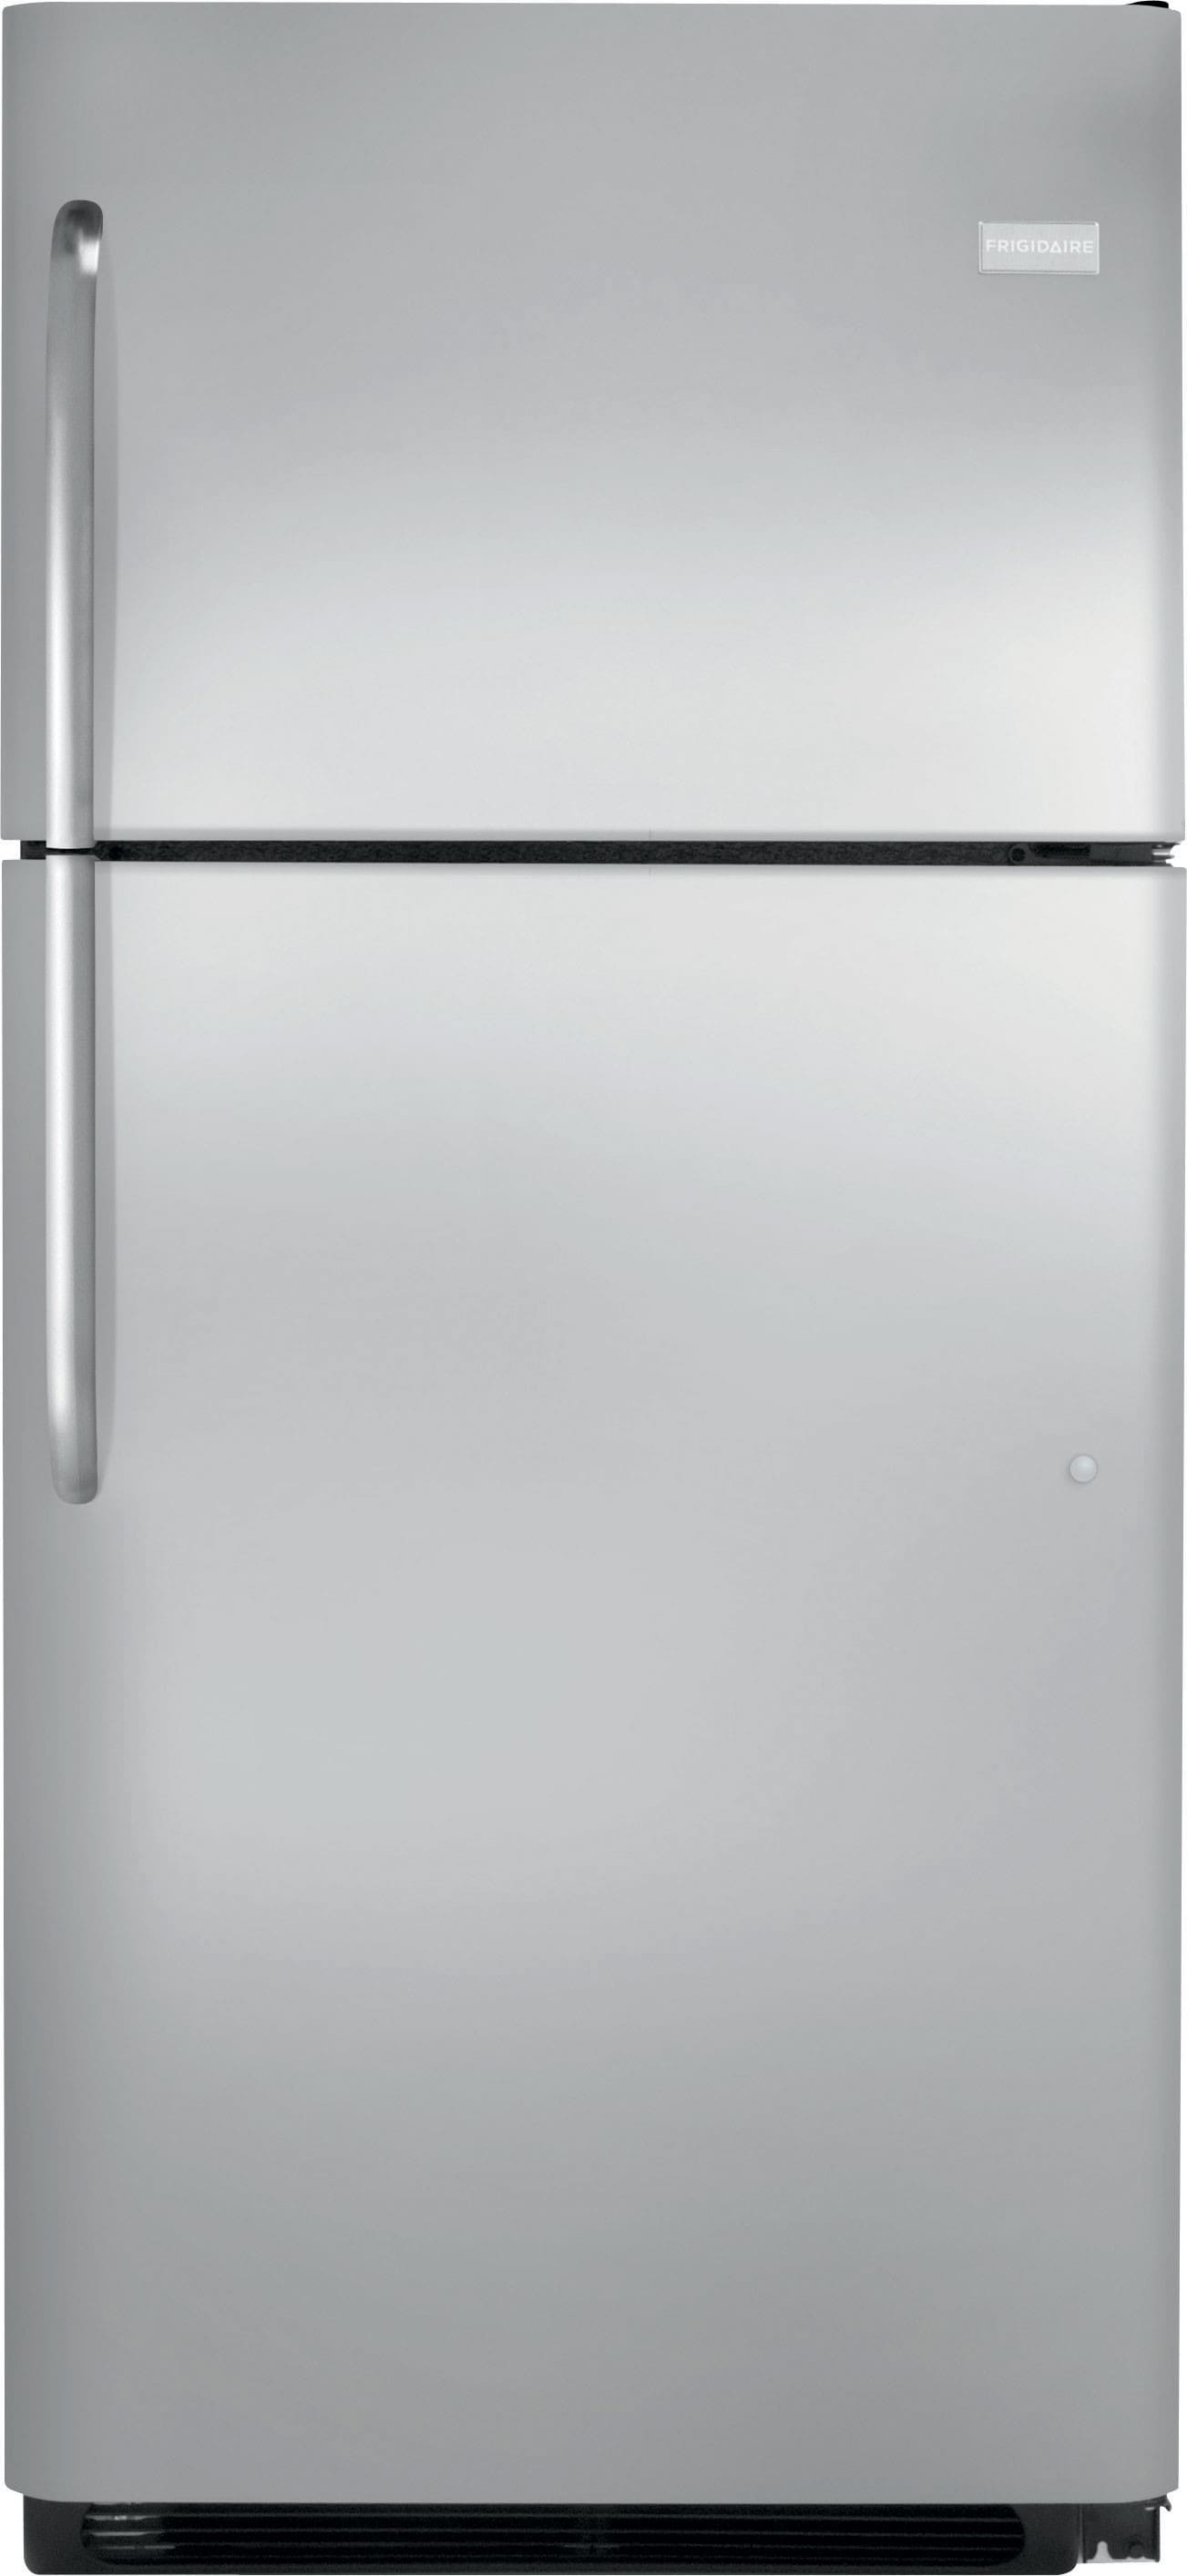 Frigidaire FFTR21D2PS 20.5 cu. ft. Top-Freezer Refrigerator with Glass ...